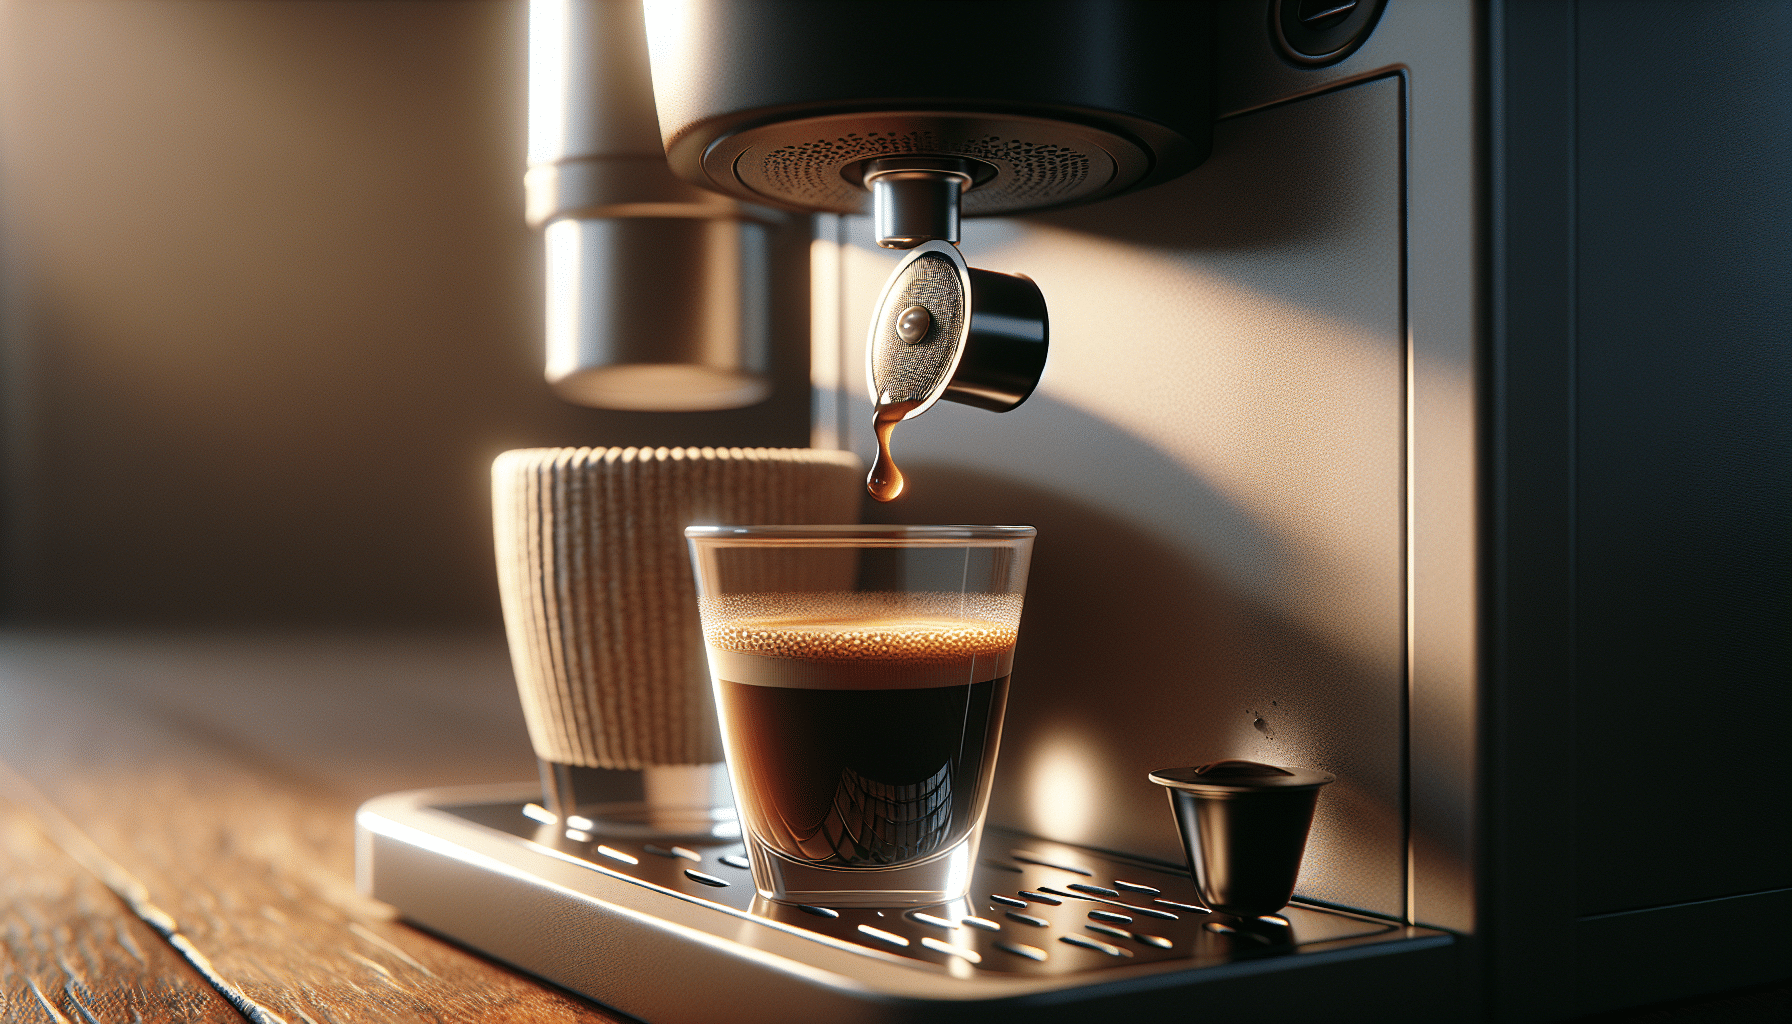 Perfect uitgelijnde inbrenging van koffiepads in nescafé-machine